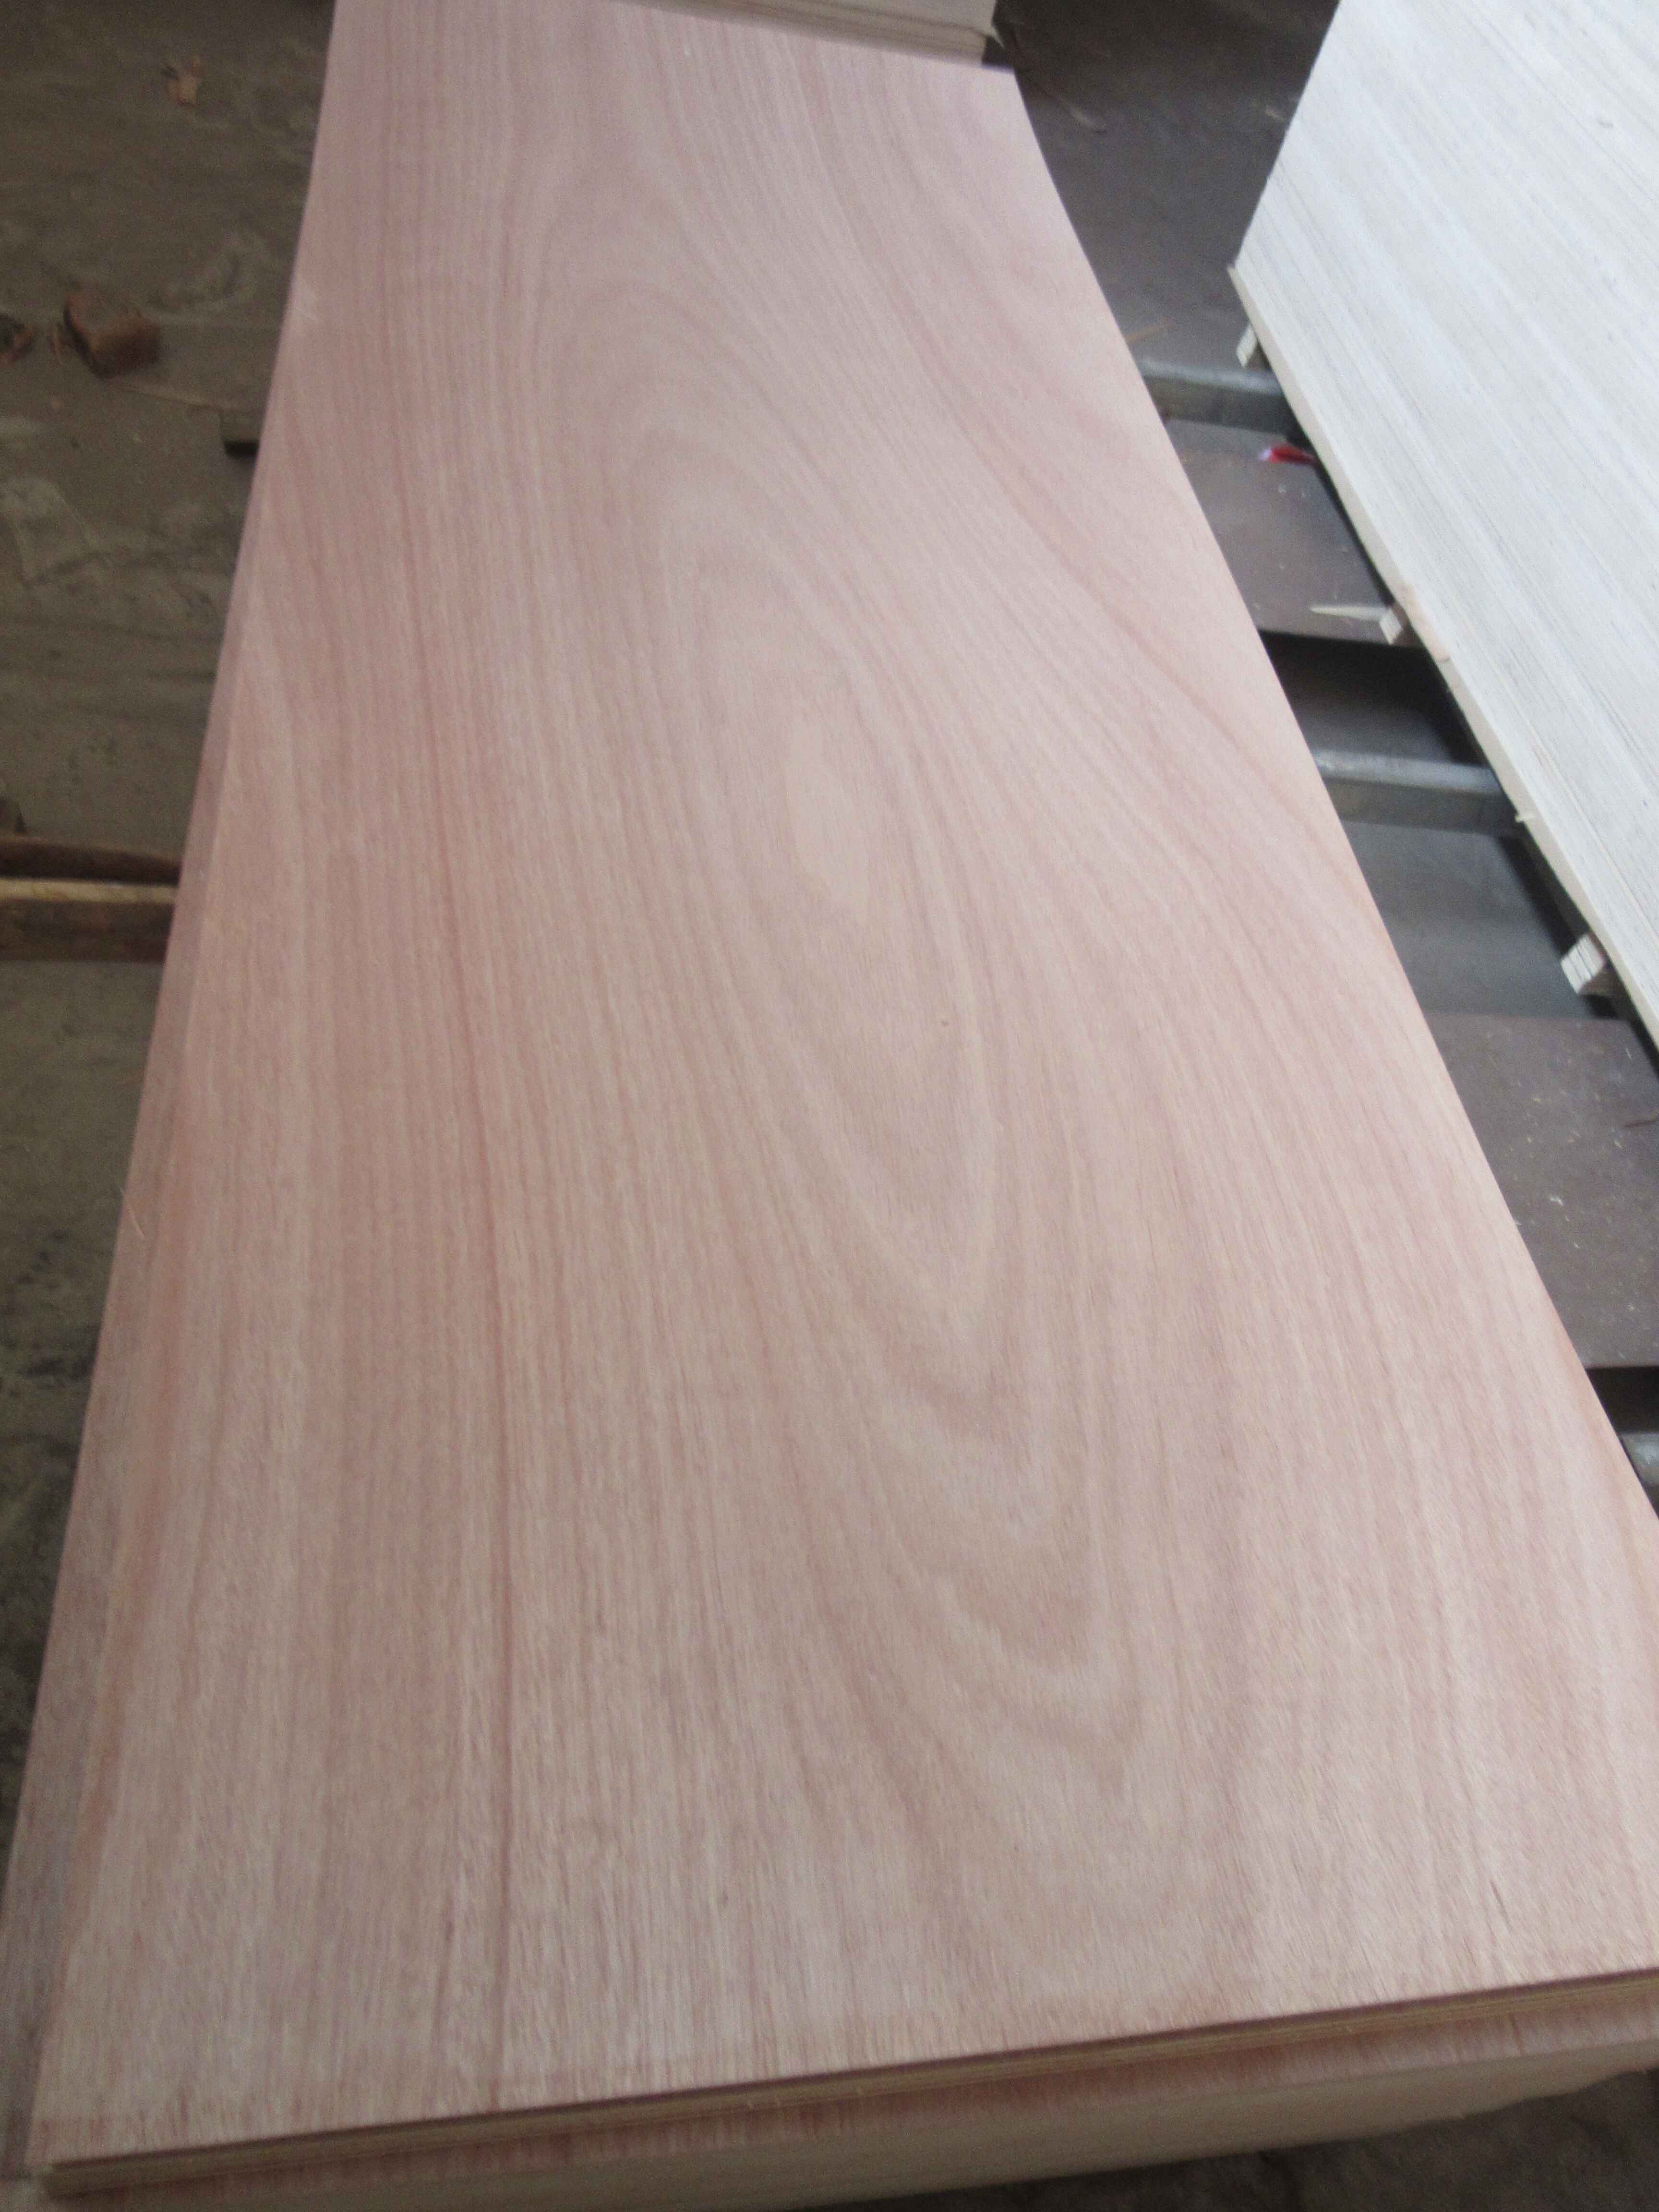 3mm/6mm/9mm/12mm/15mm/18mm /Door Skin Okoume Bintangor Birch Sapeli Teak Maple Wood Veneer Commercial Plywood /Mahogany Plywood for Door/Furniture/ Decoration